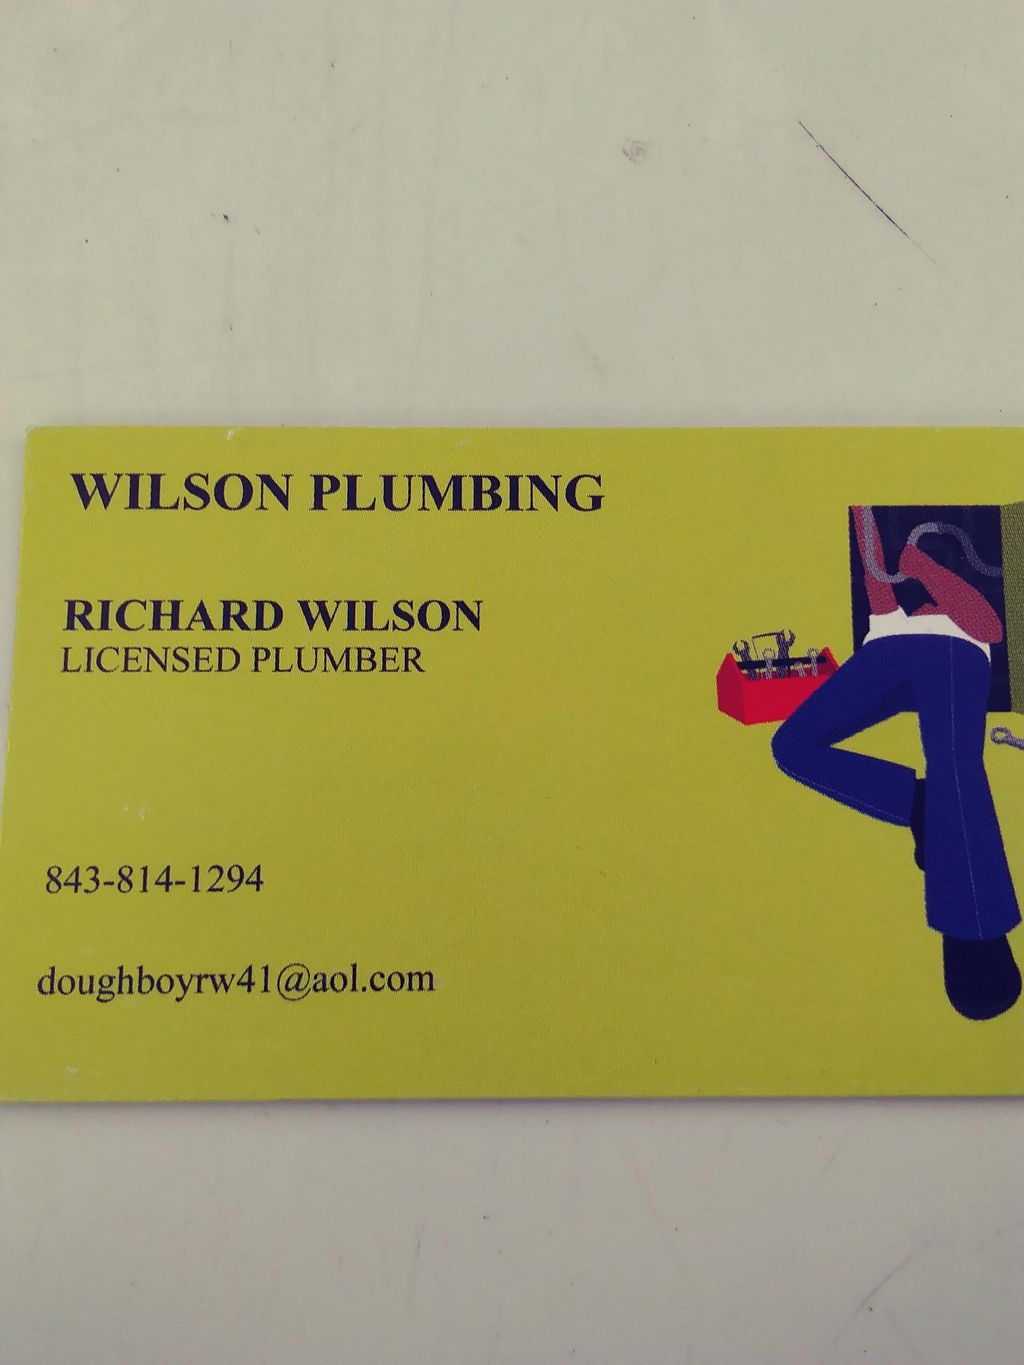 Richard Wilson plumbing